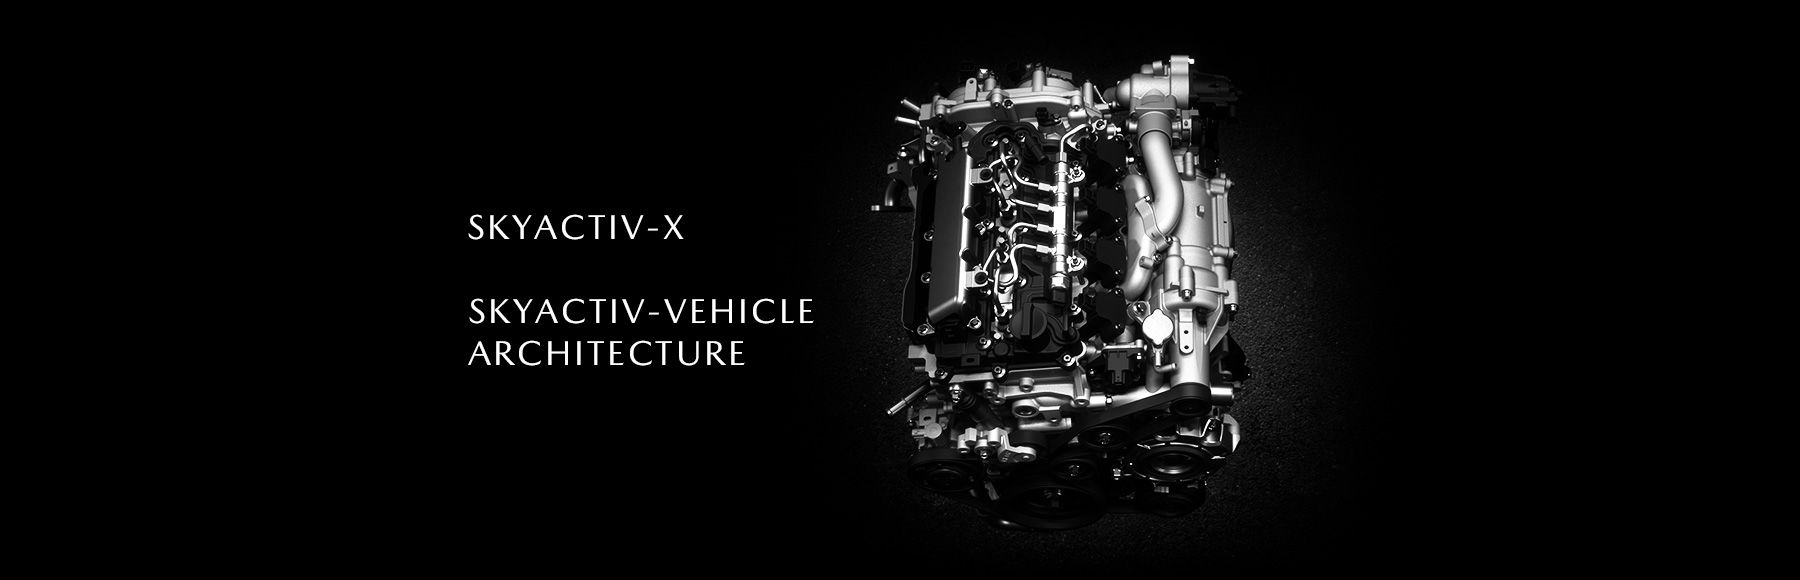 Mazda SKYACTIV-X technology.